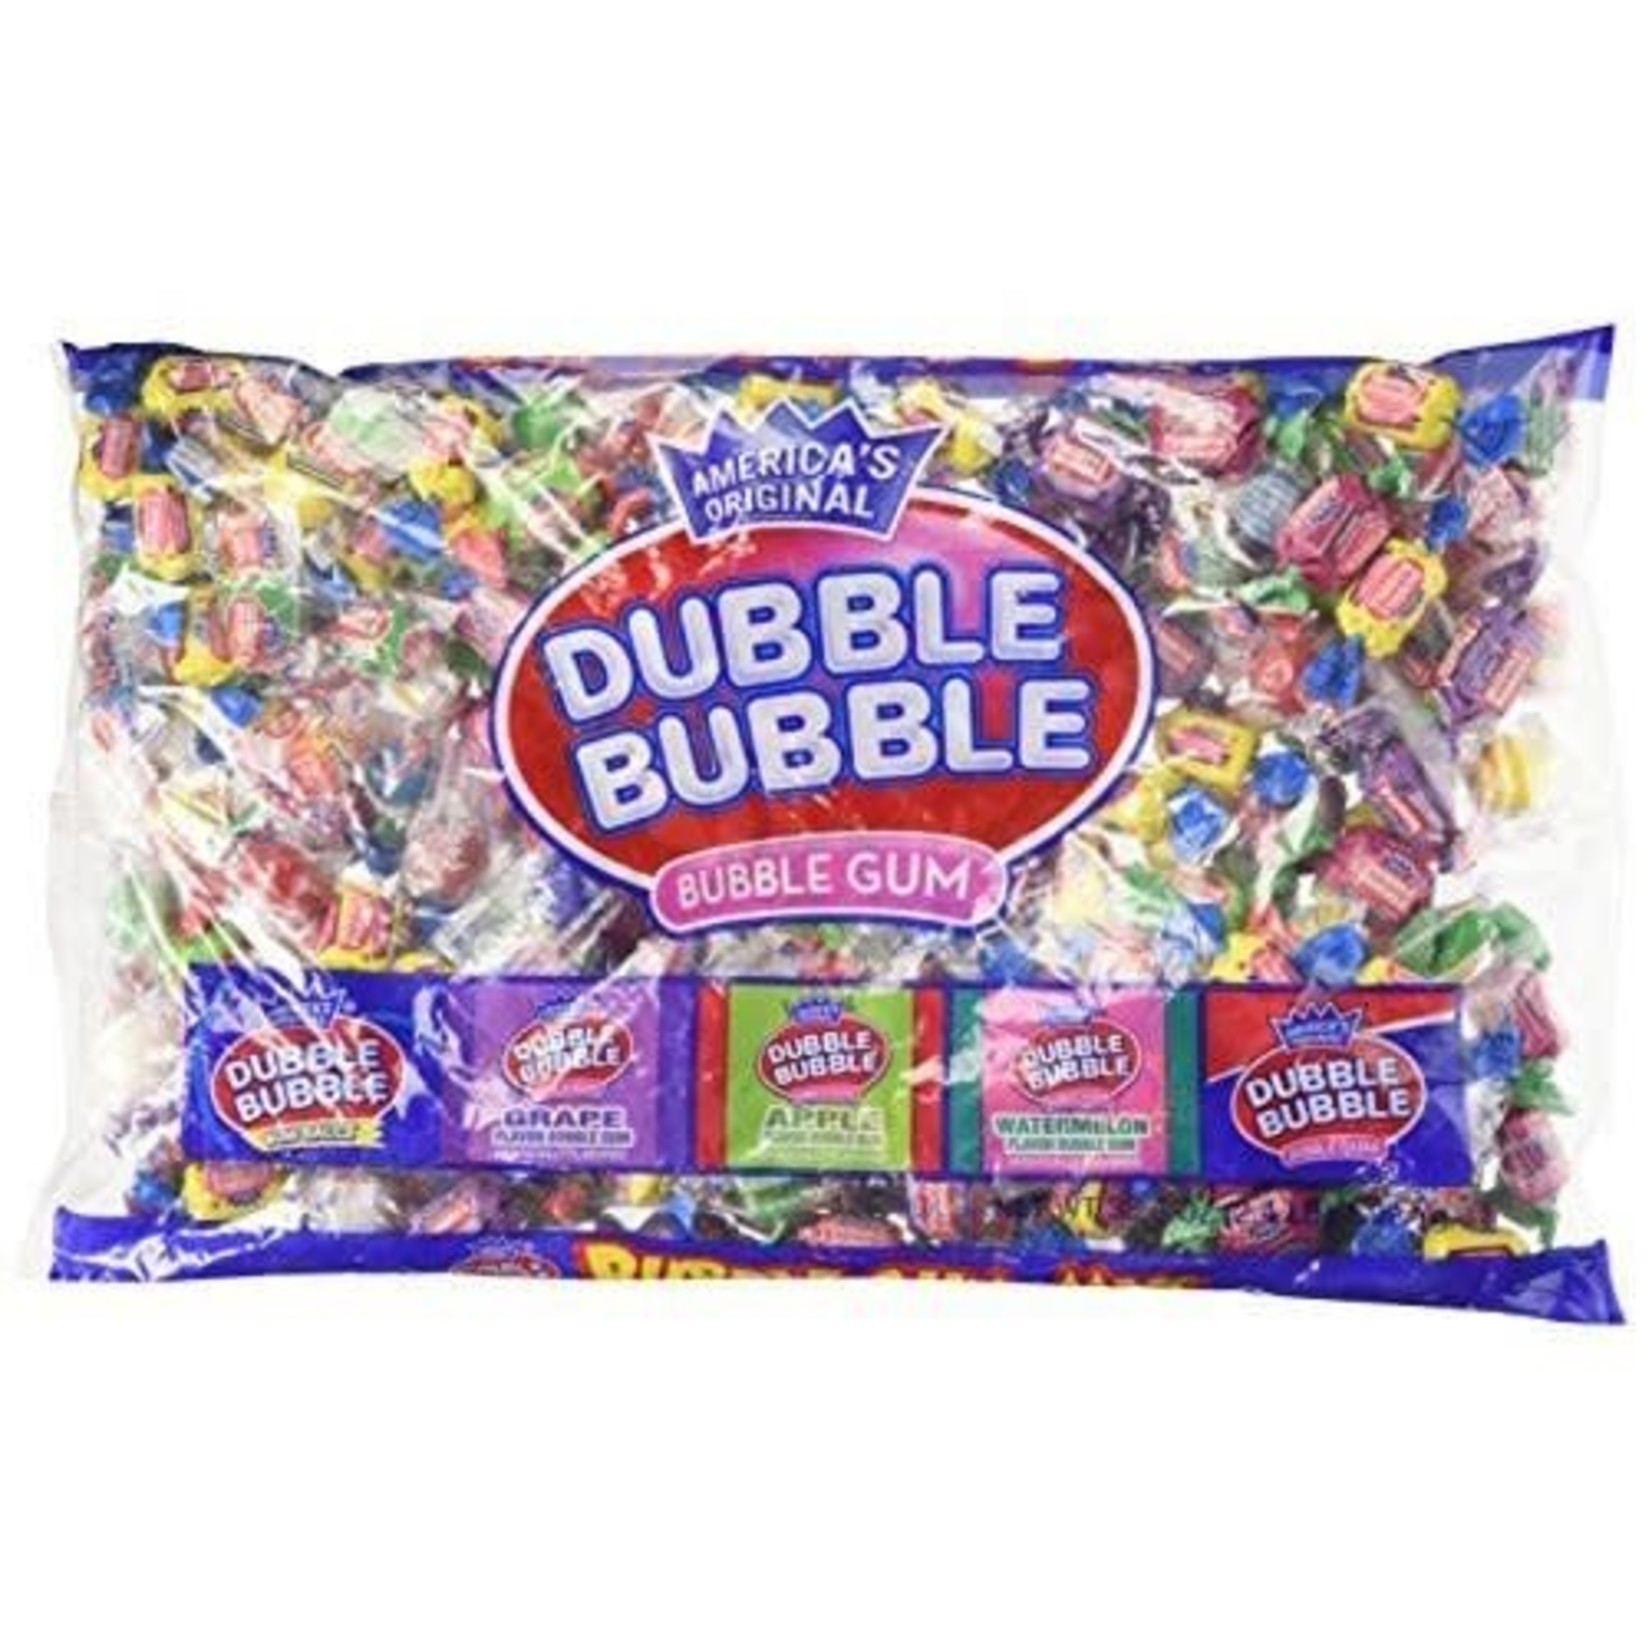 Dubble Bubble Dubble Bubble Bubble Gum Mix 2.4lb